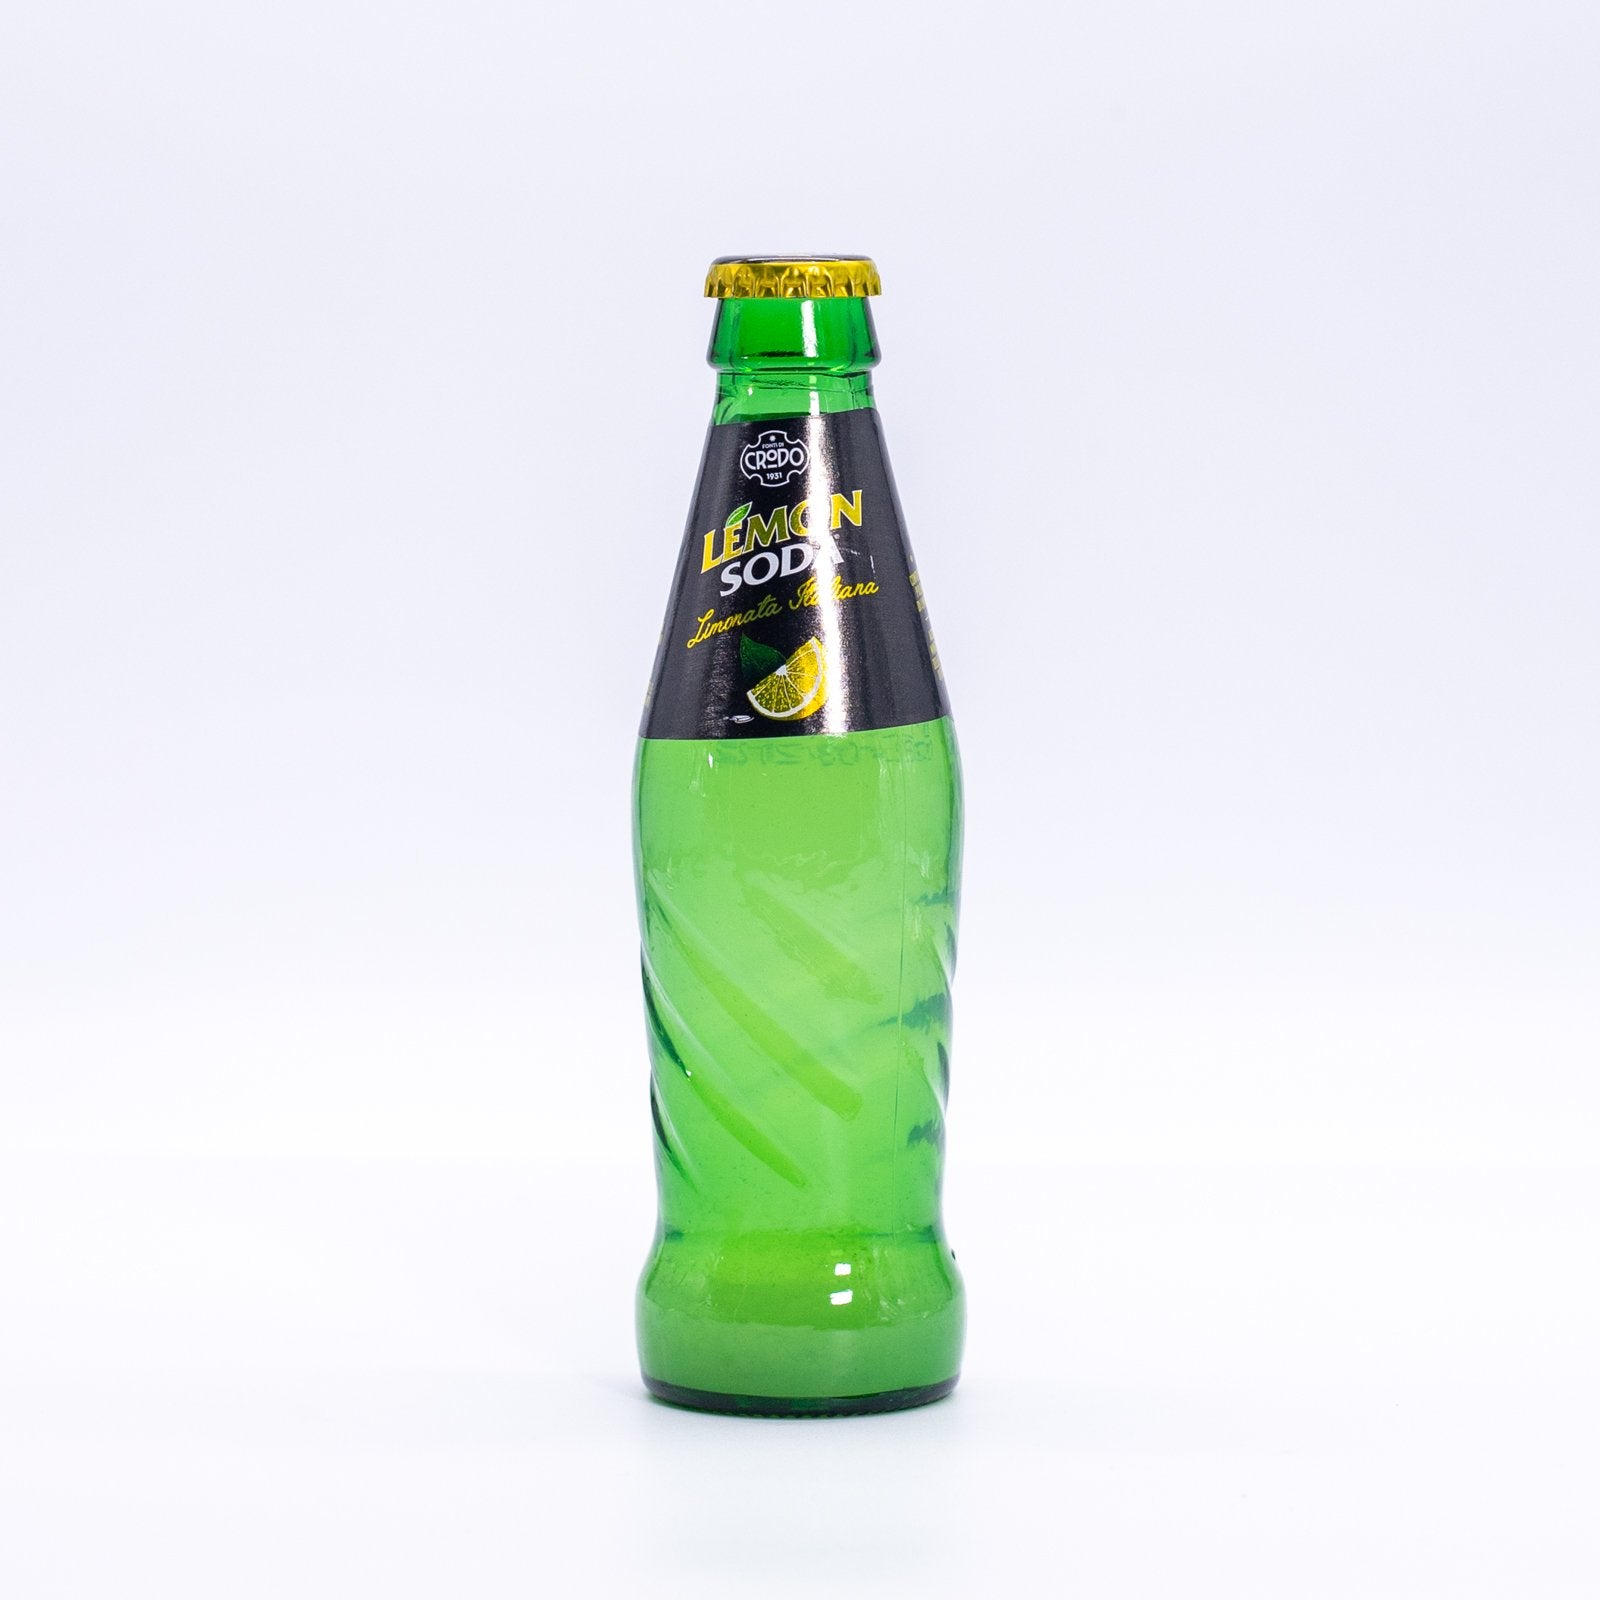 Lemon Soda - 0.33cl